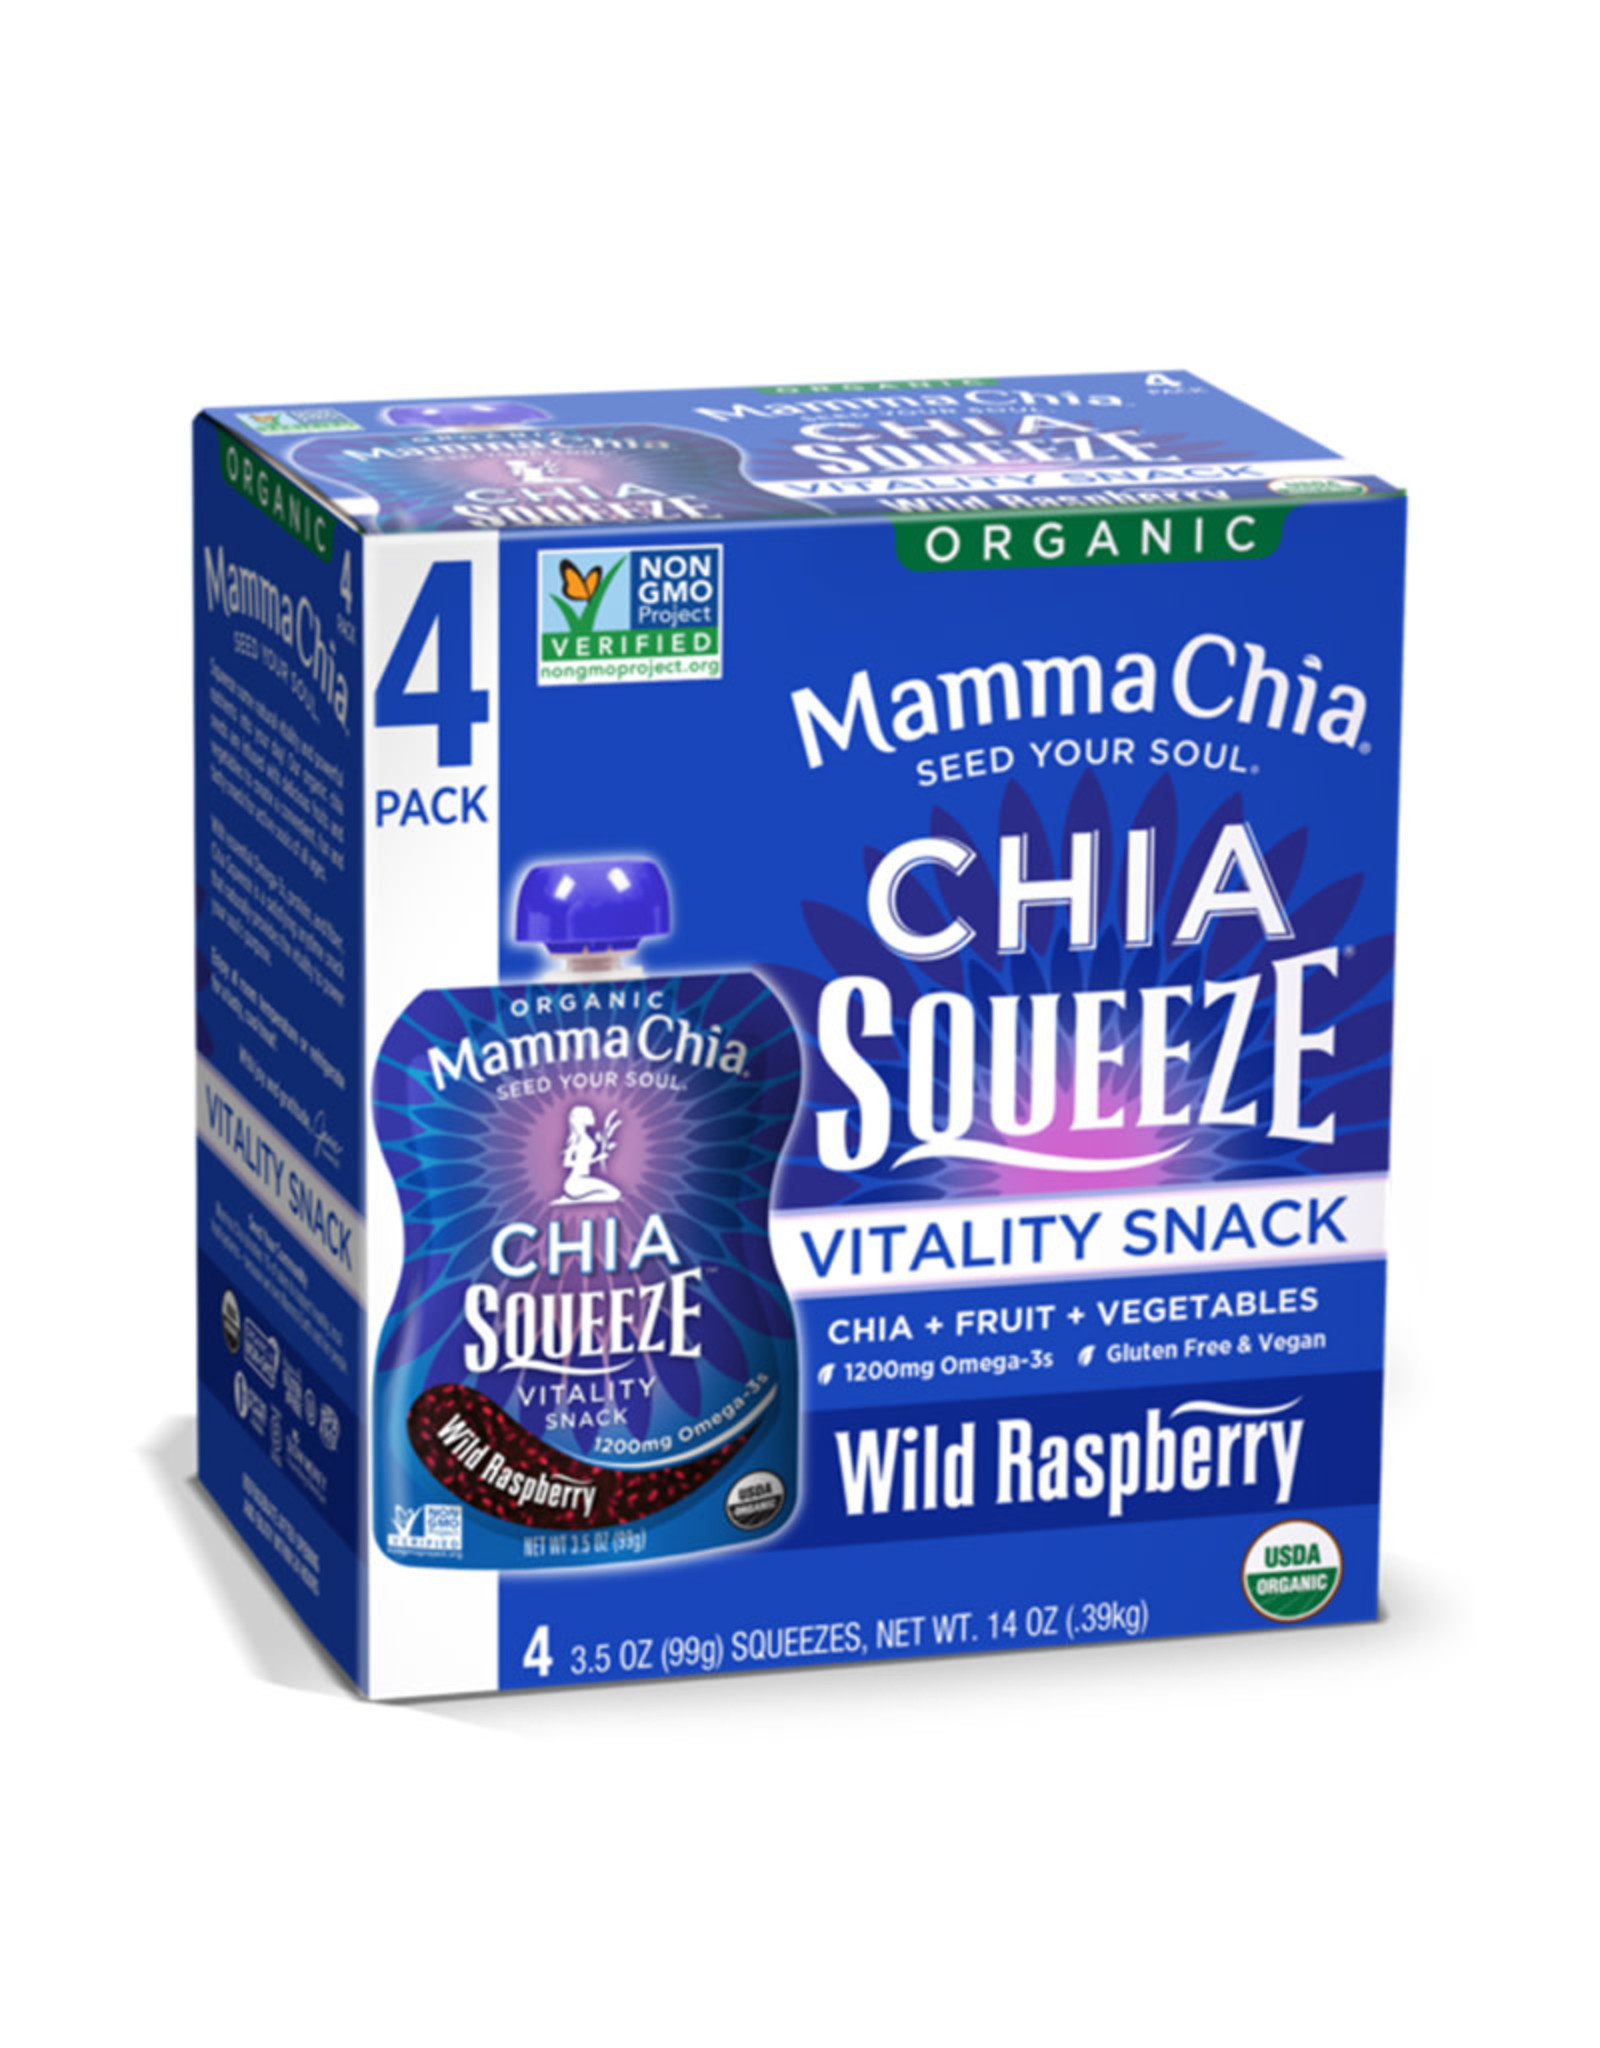 Mamma Chia Mamma Chia - Chia Squeeze, Wild Raspberry (Box)